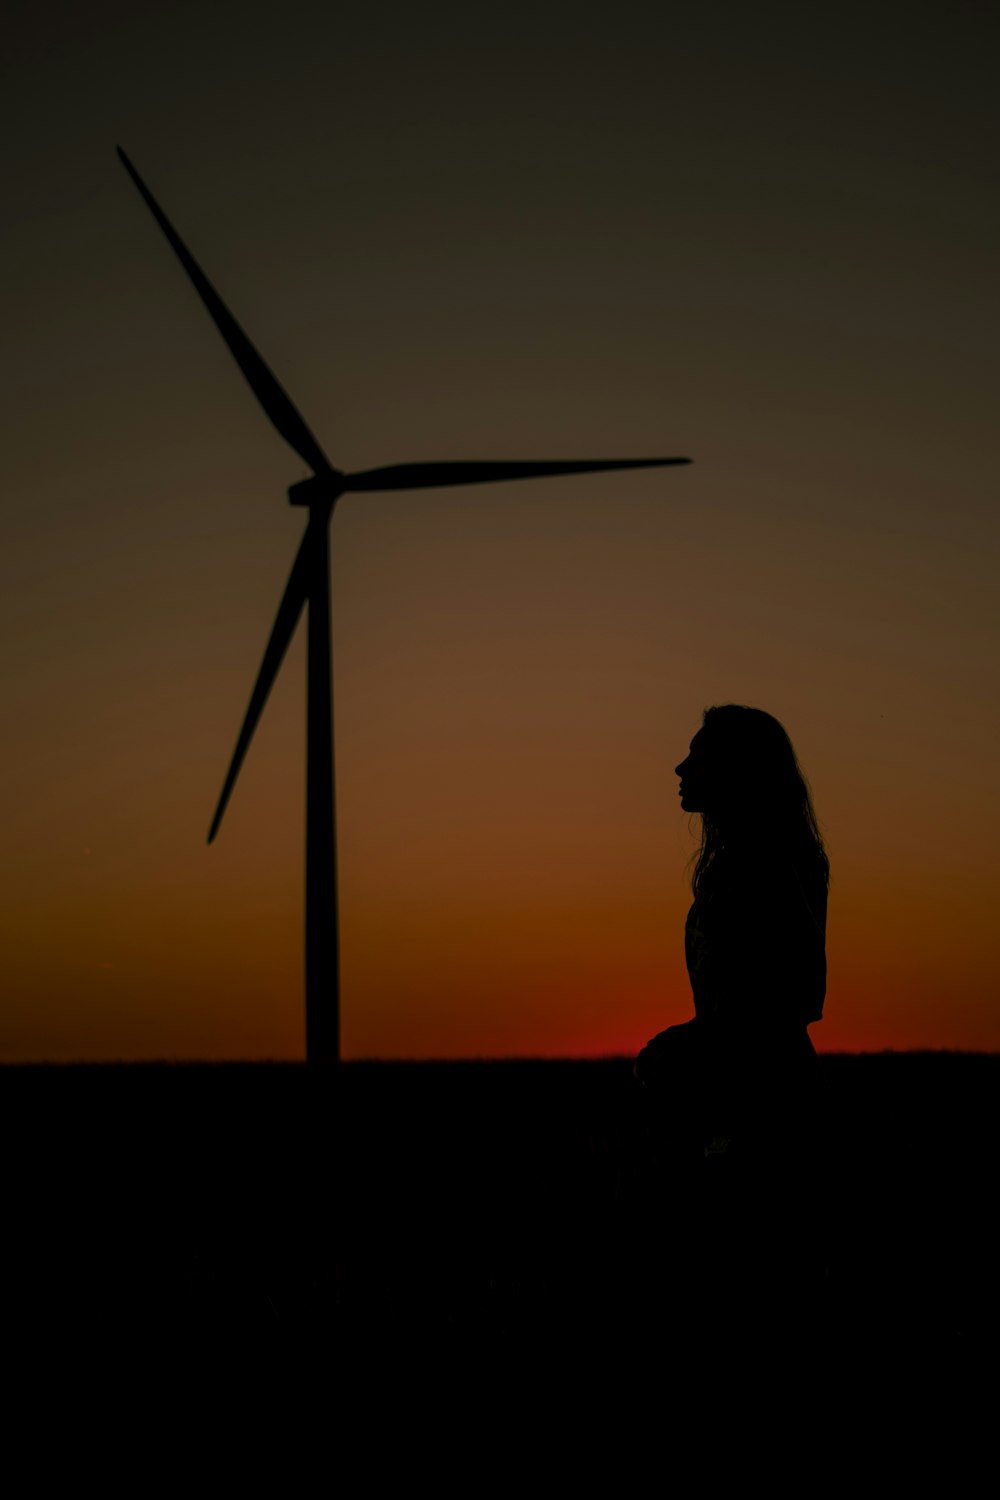 Silueta de la persona de pie cerca del molino de viento durante la puesta del sol